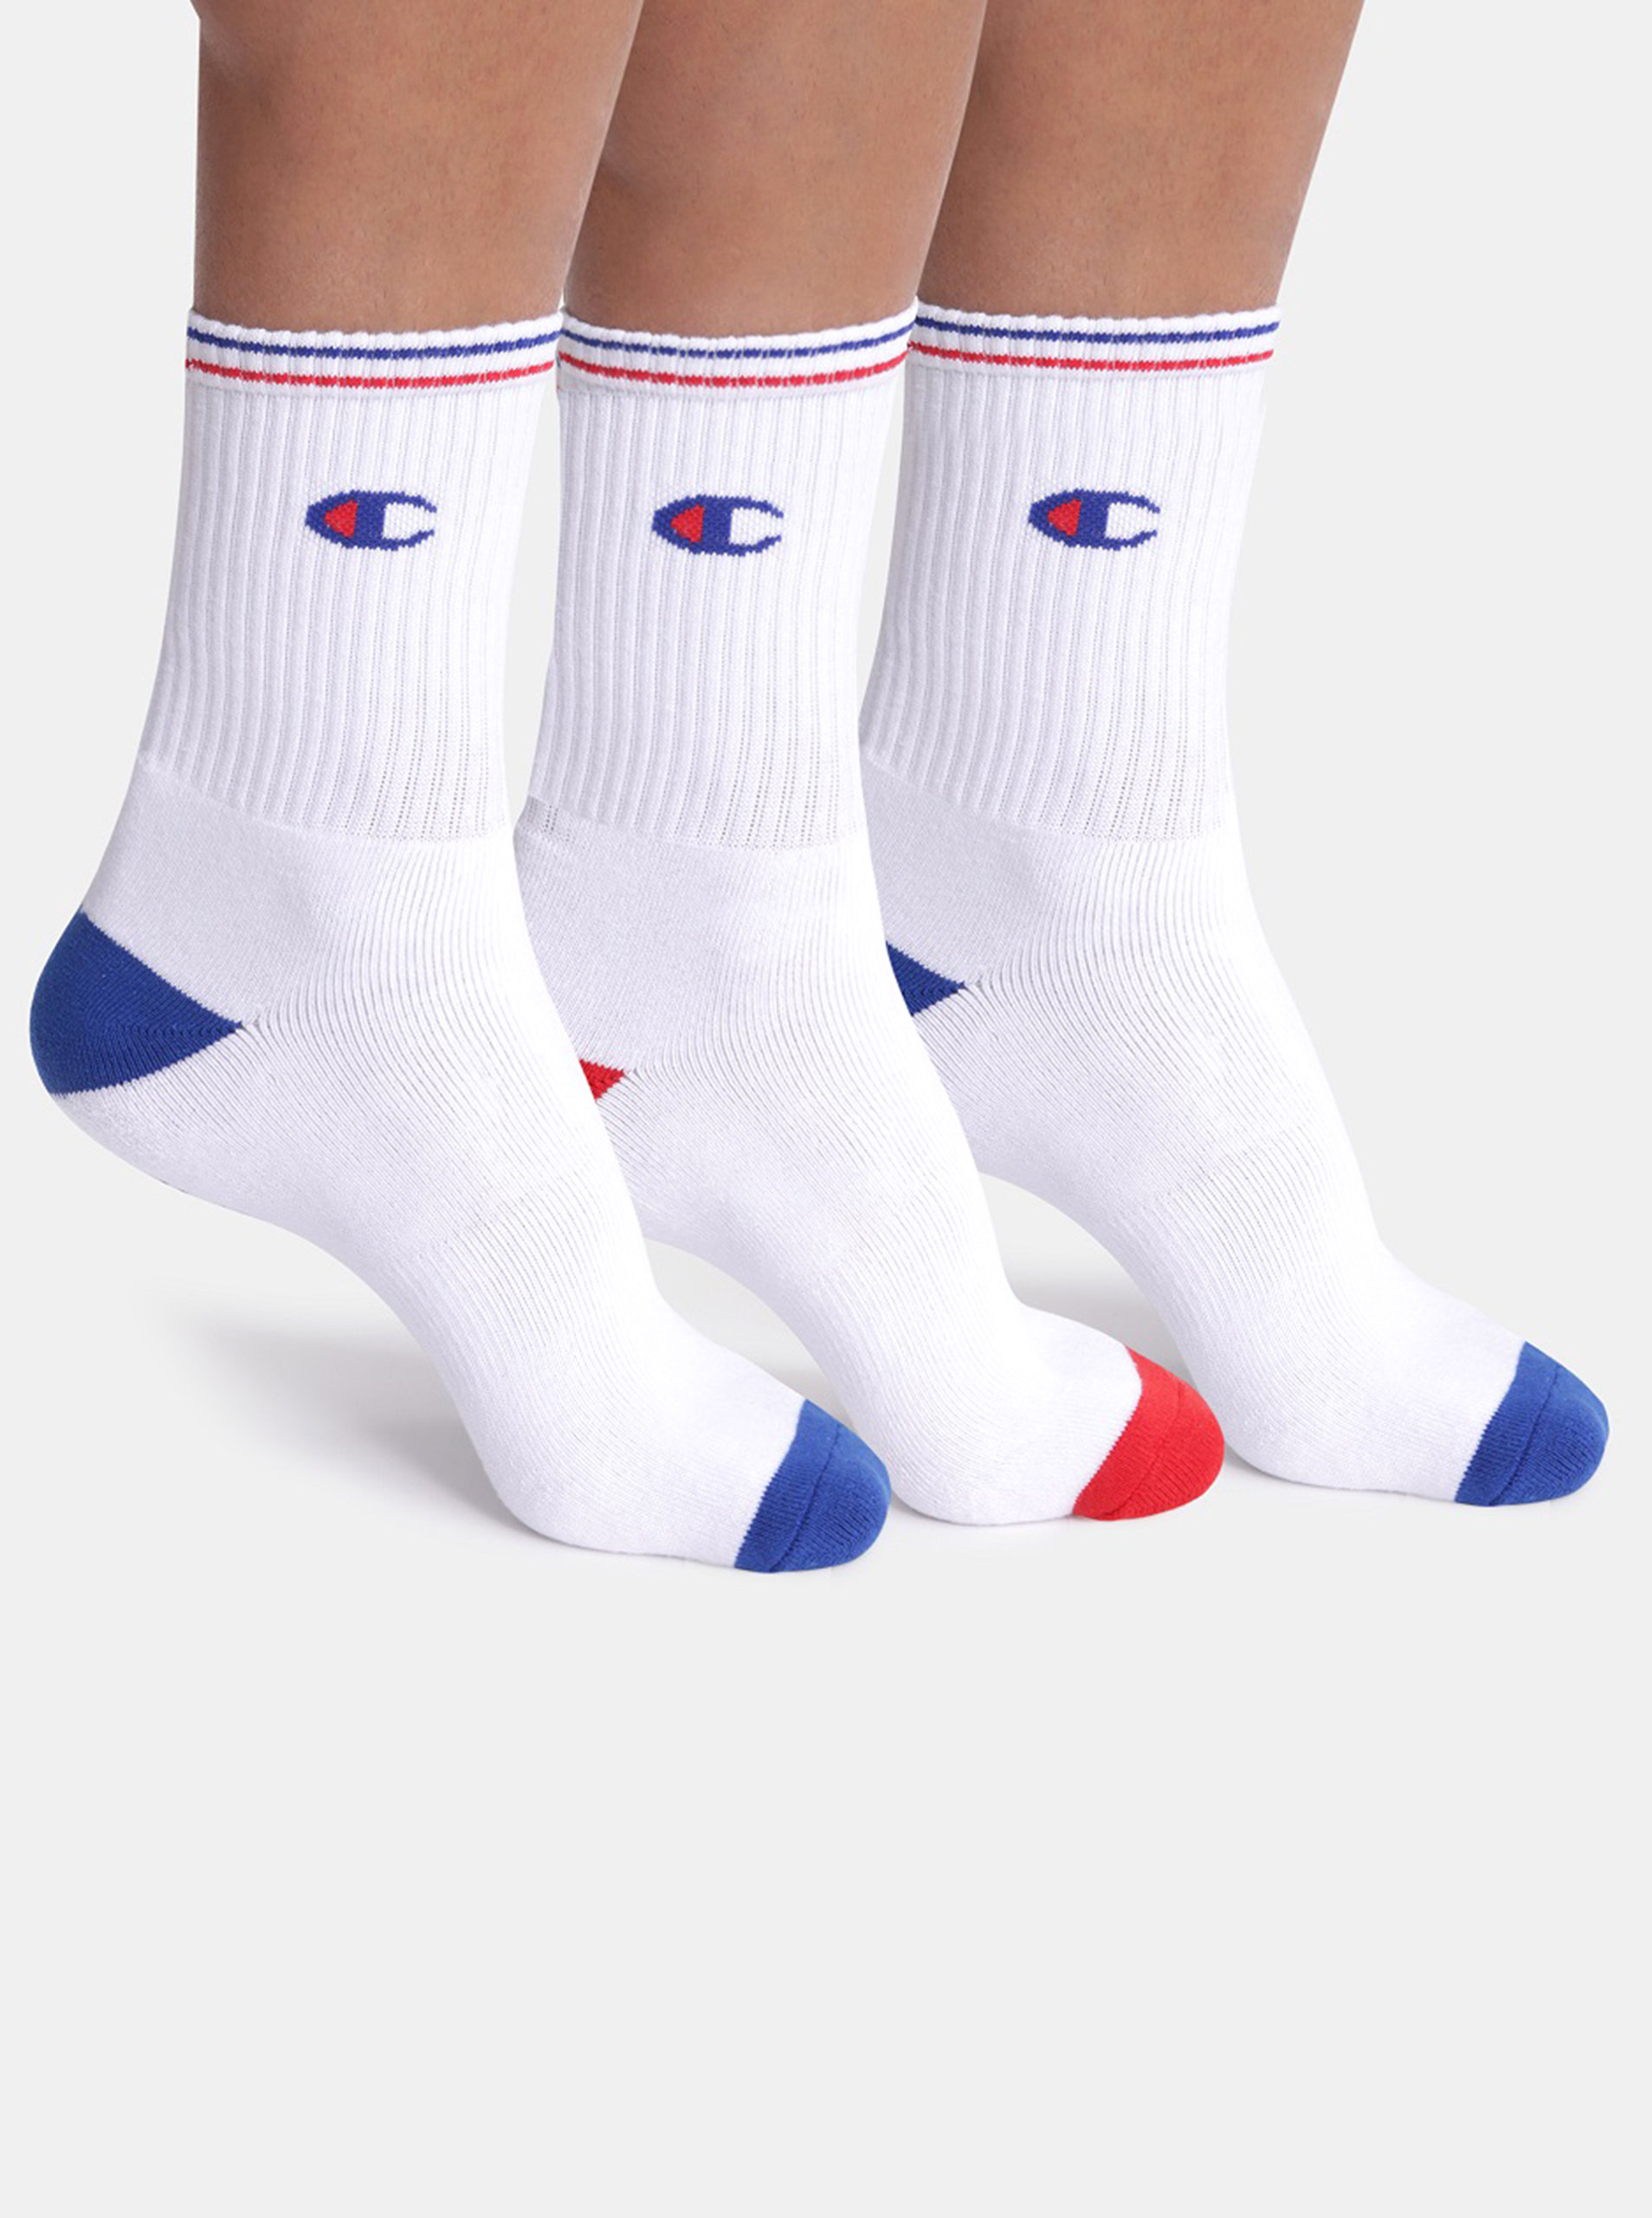 Fotografie CREW SOCKS PERFORMANCE 3x - Sportovní ponožky 3 páry s logem Champion - bílá - červená - modrá